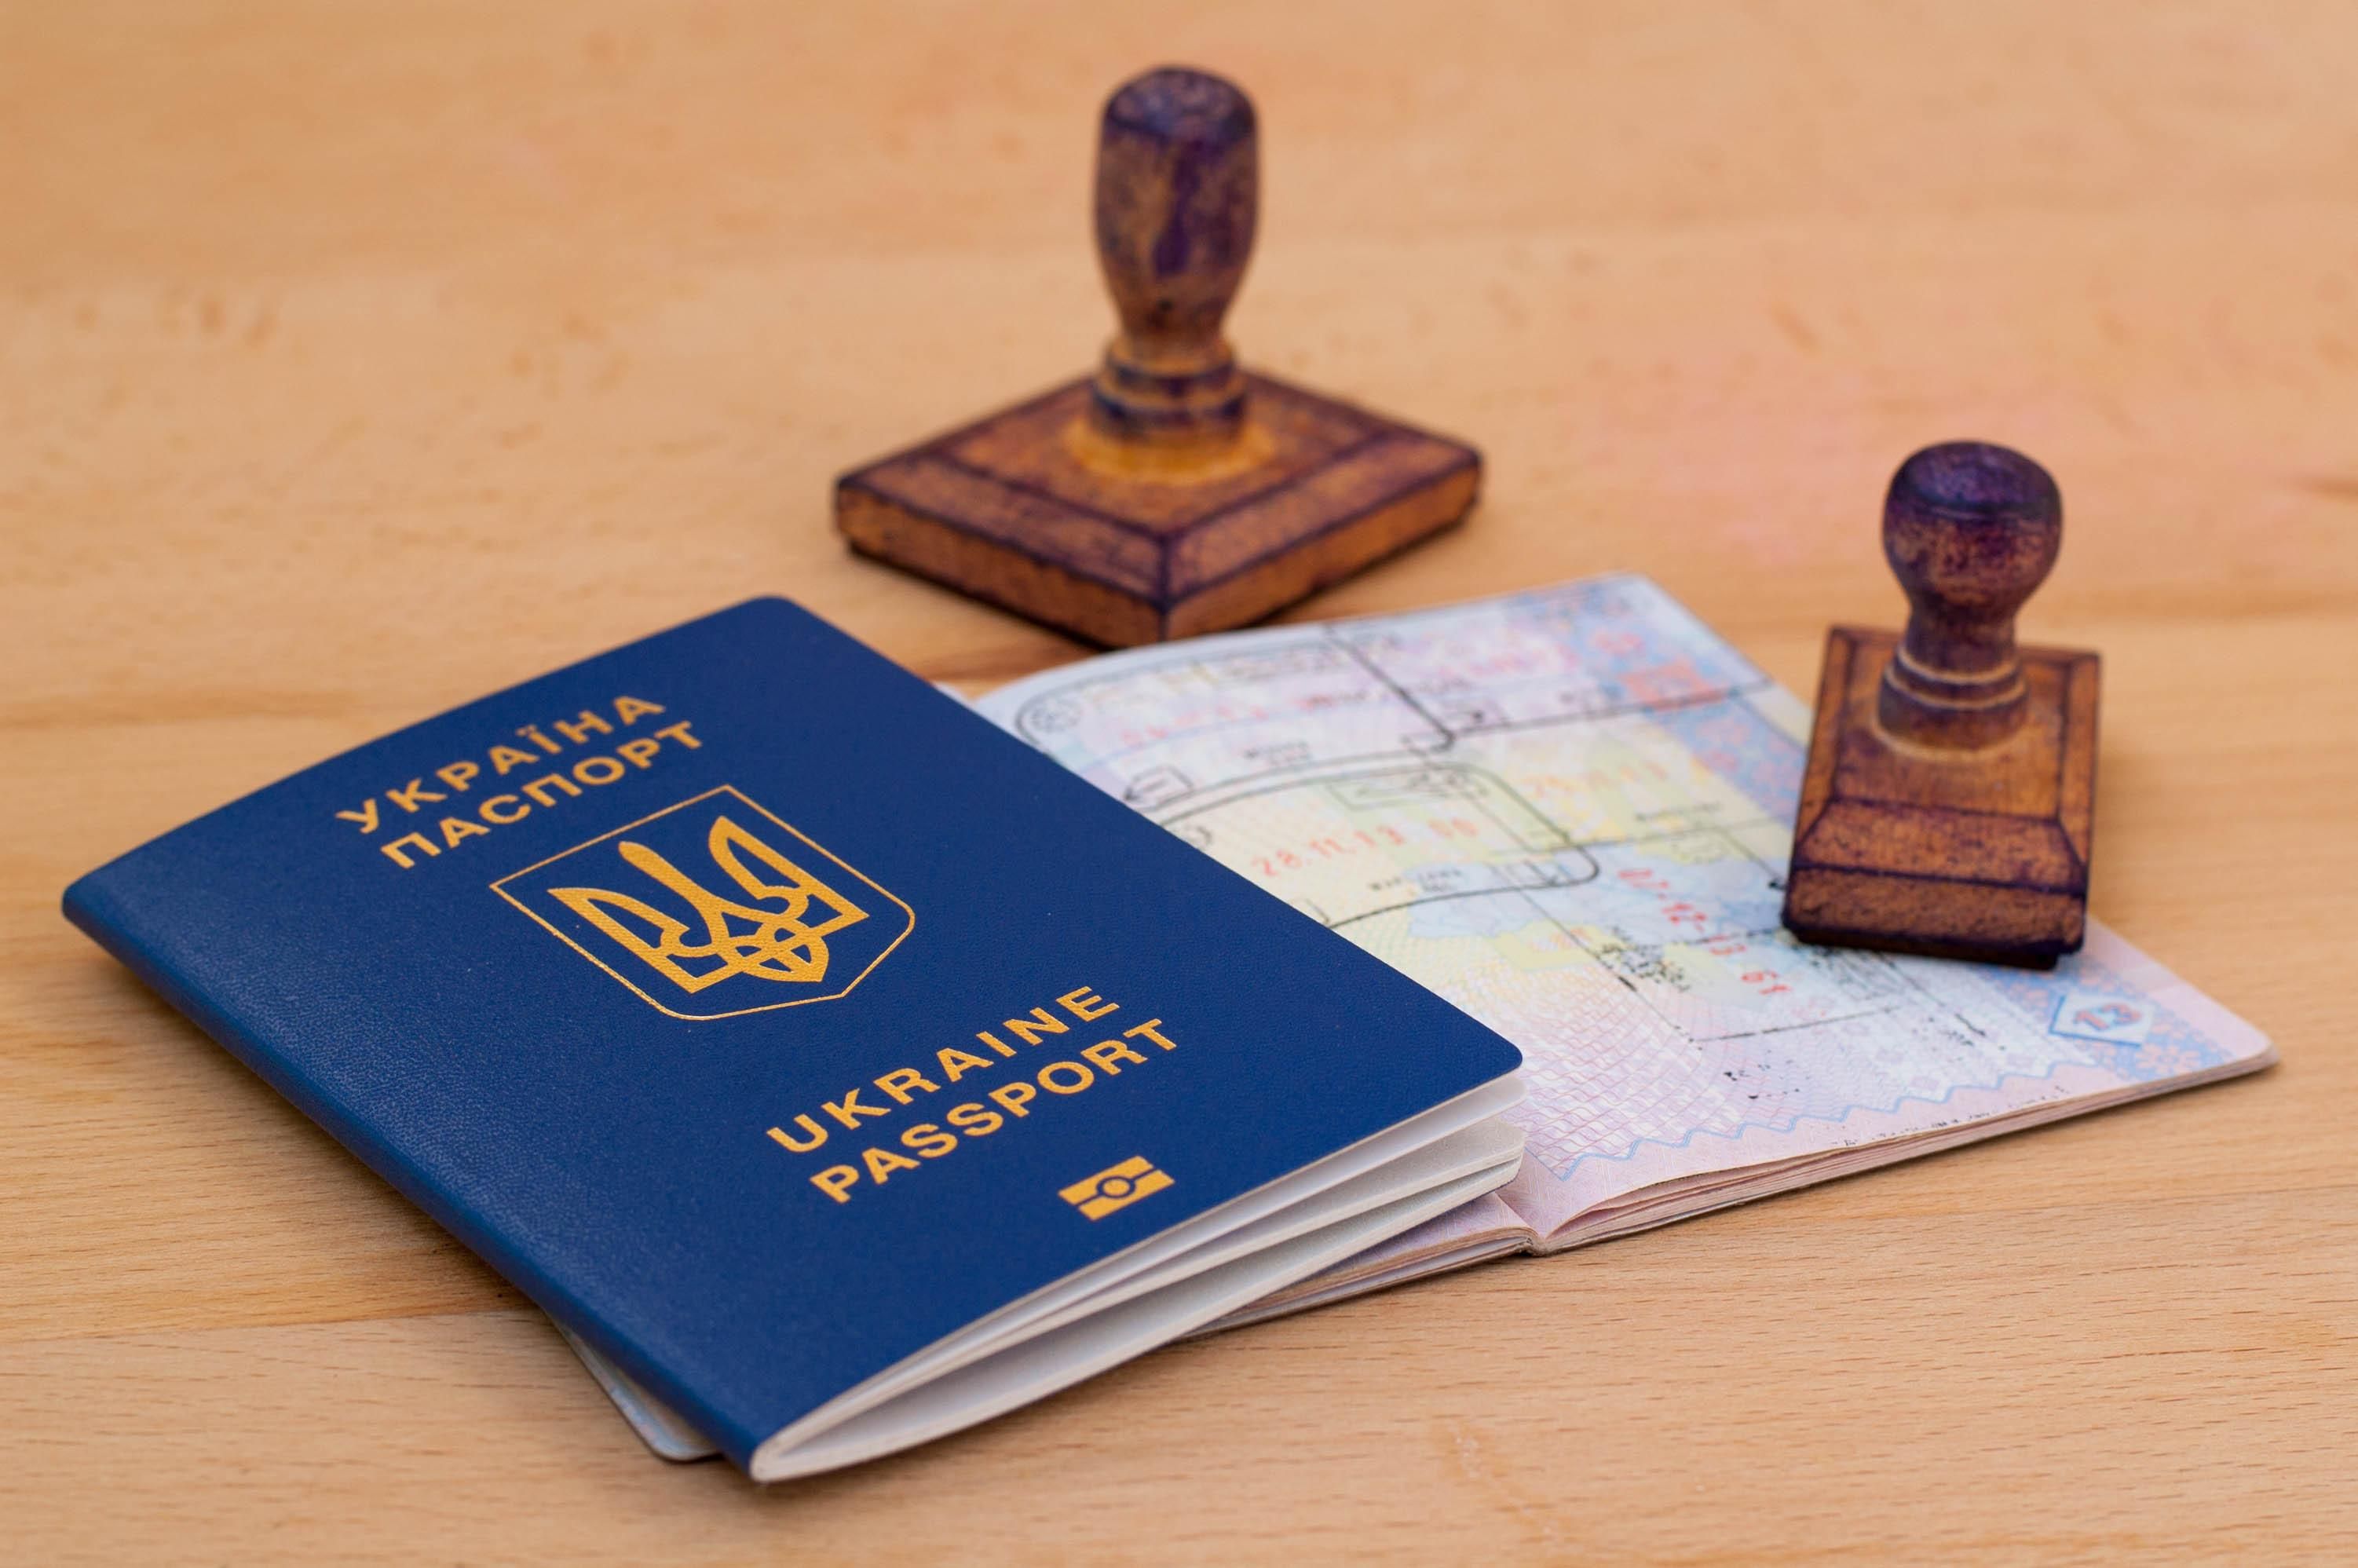 В системе оформления биометрических паспортов произошел сбой